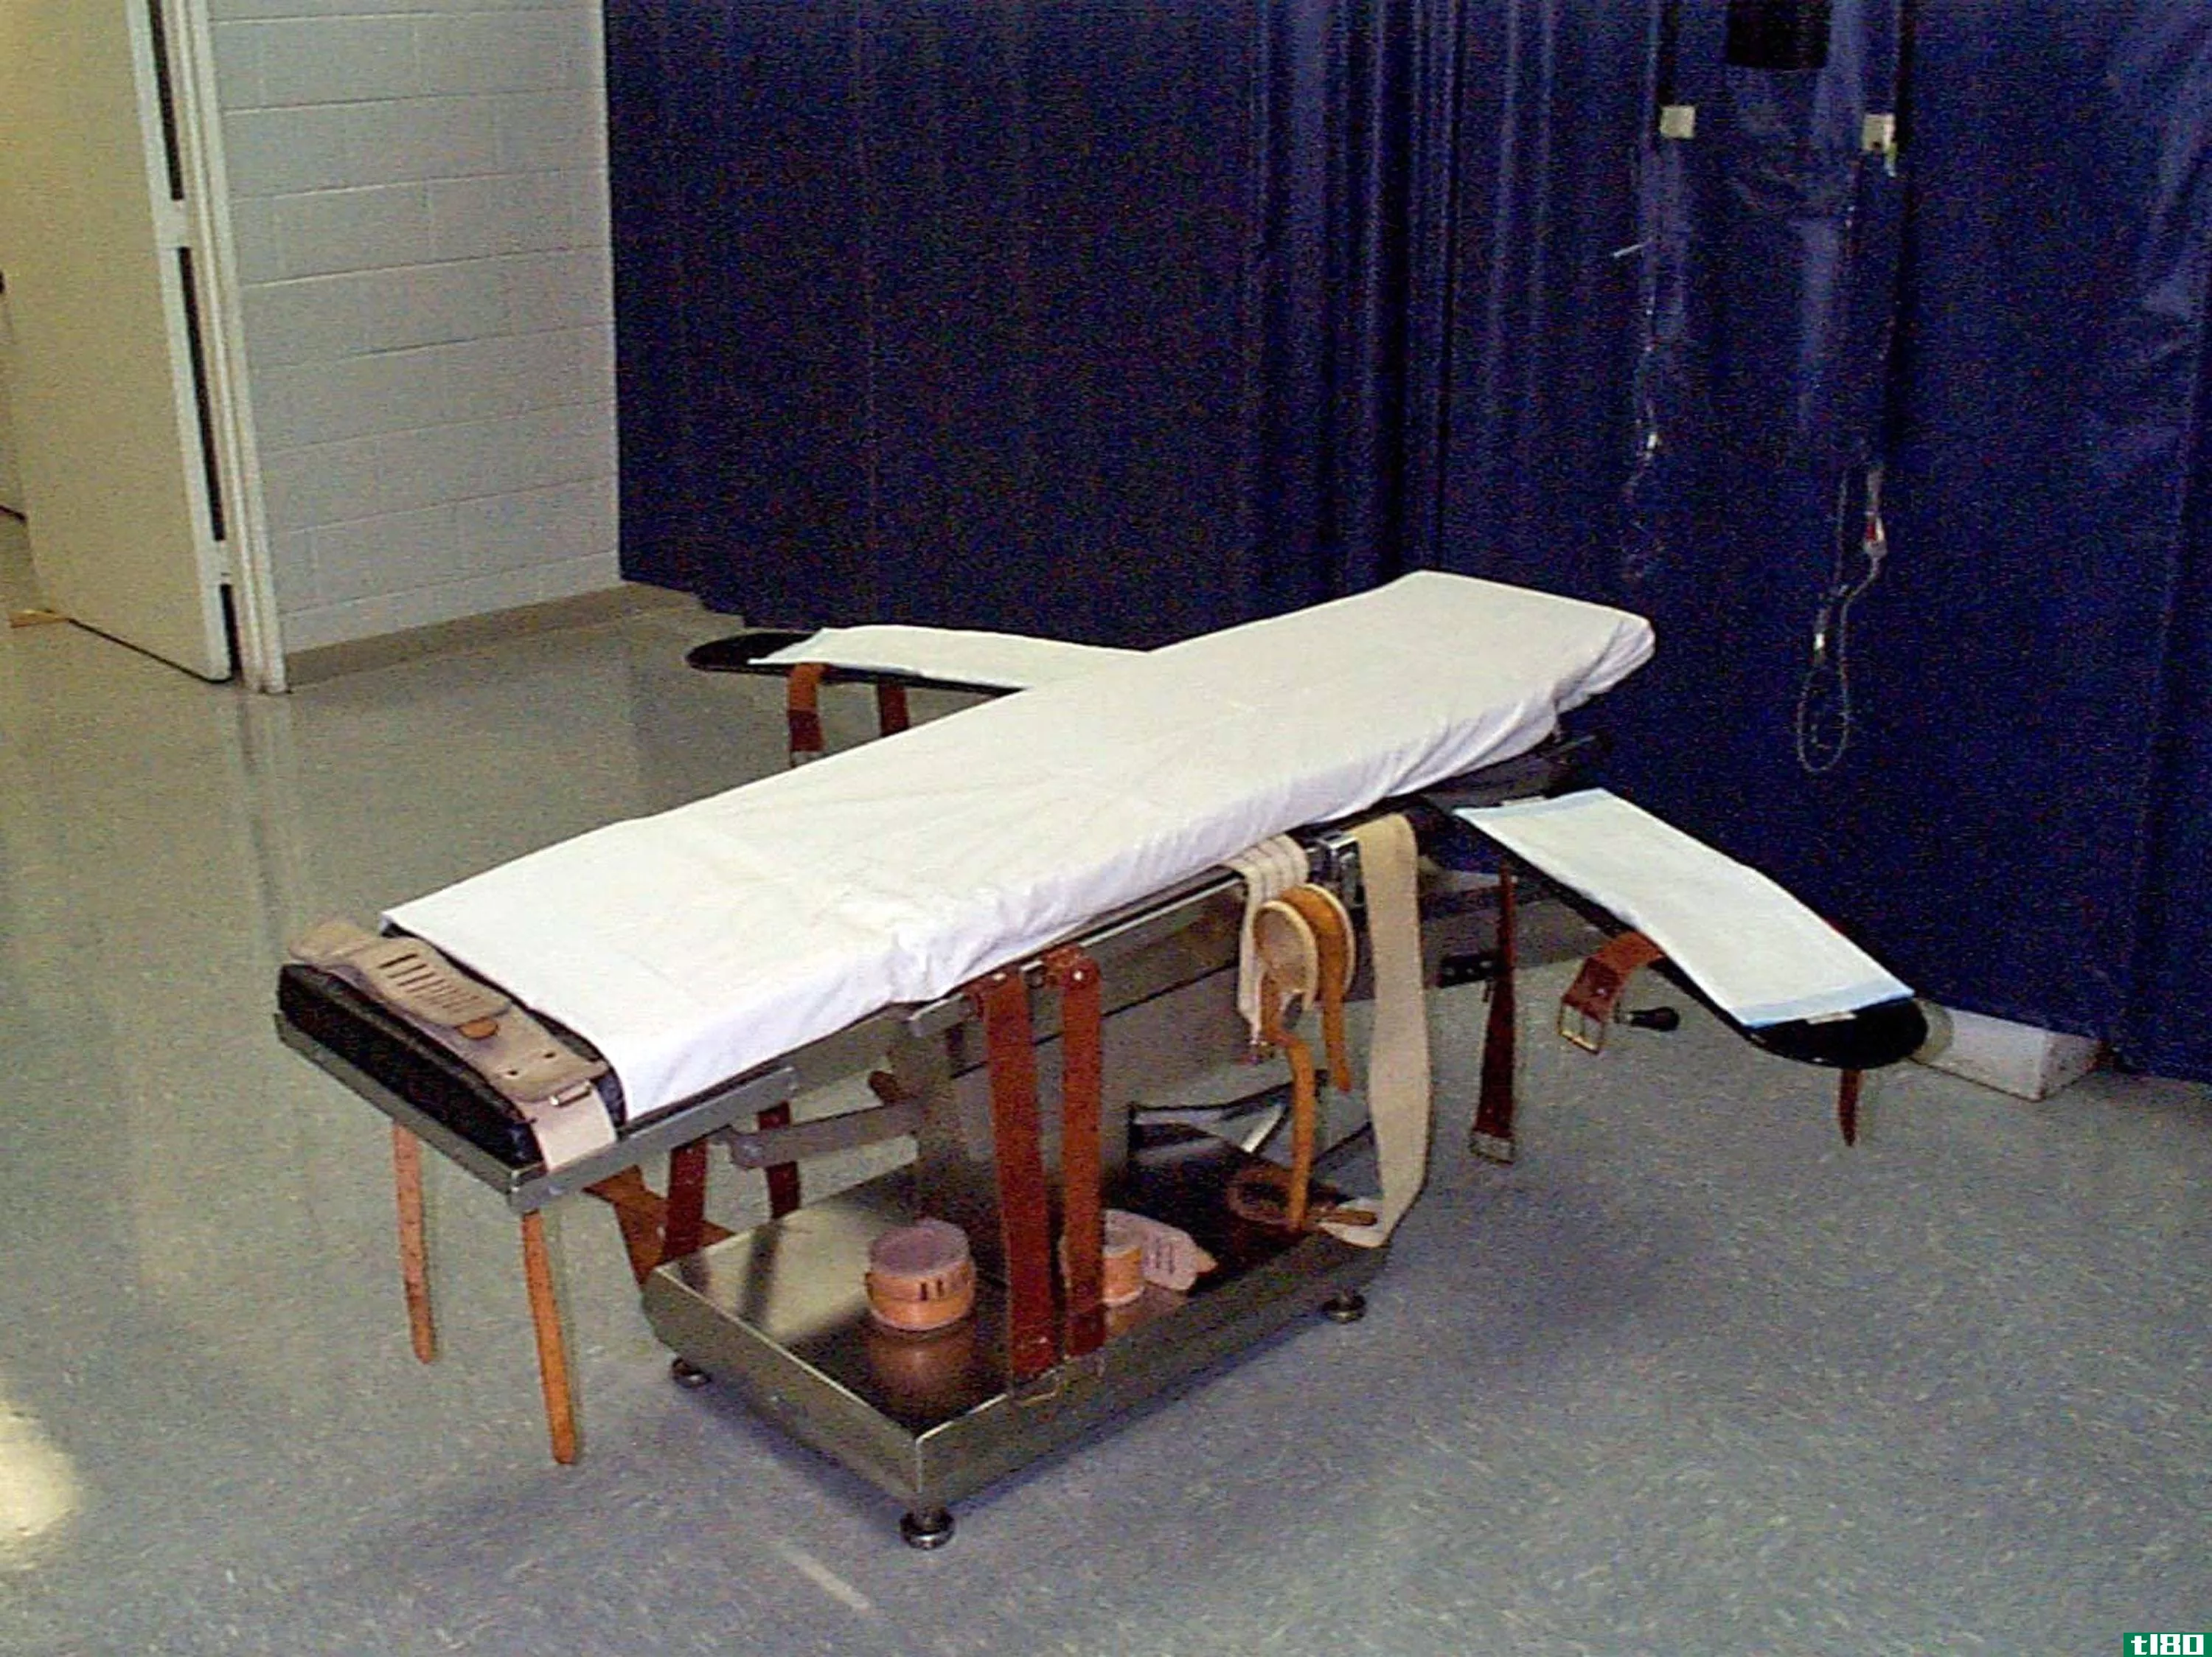 亚利桑那州将在拙劣的处决后更换致命注射药物